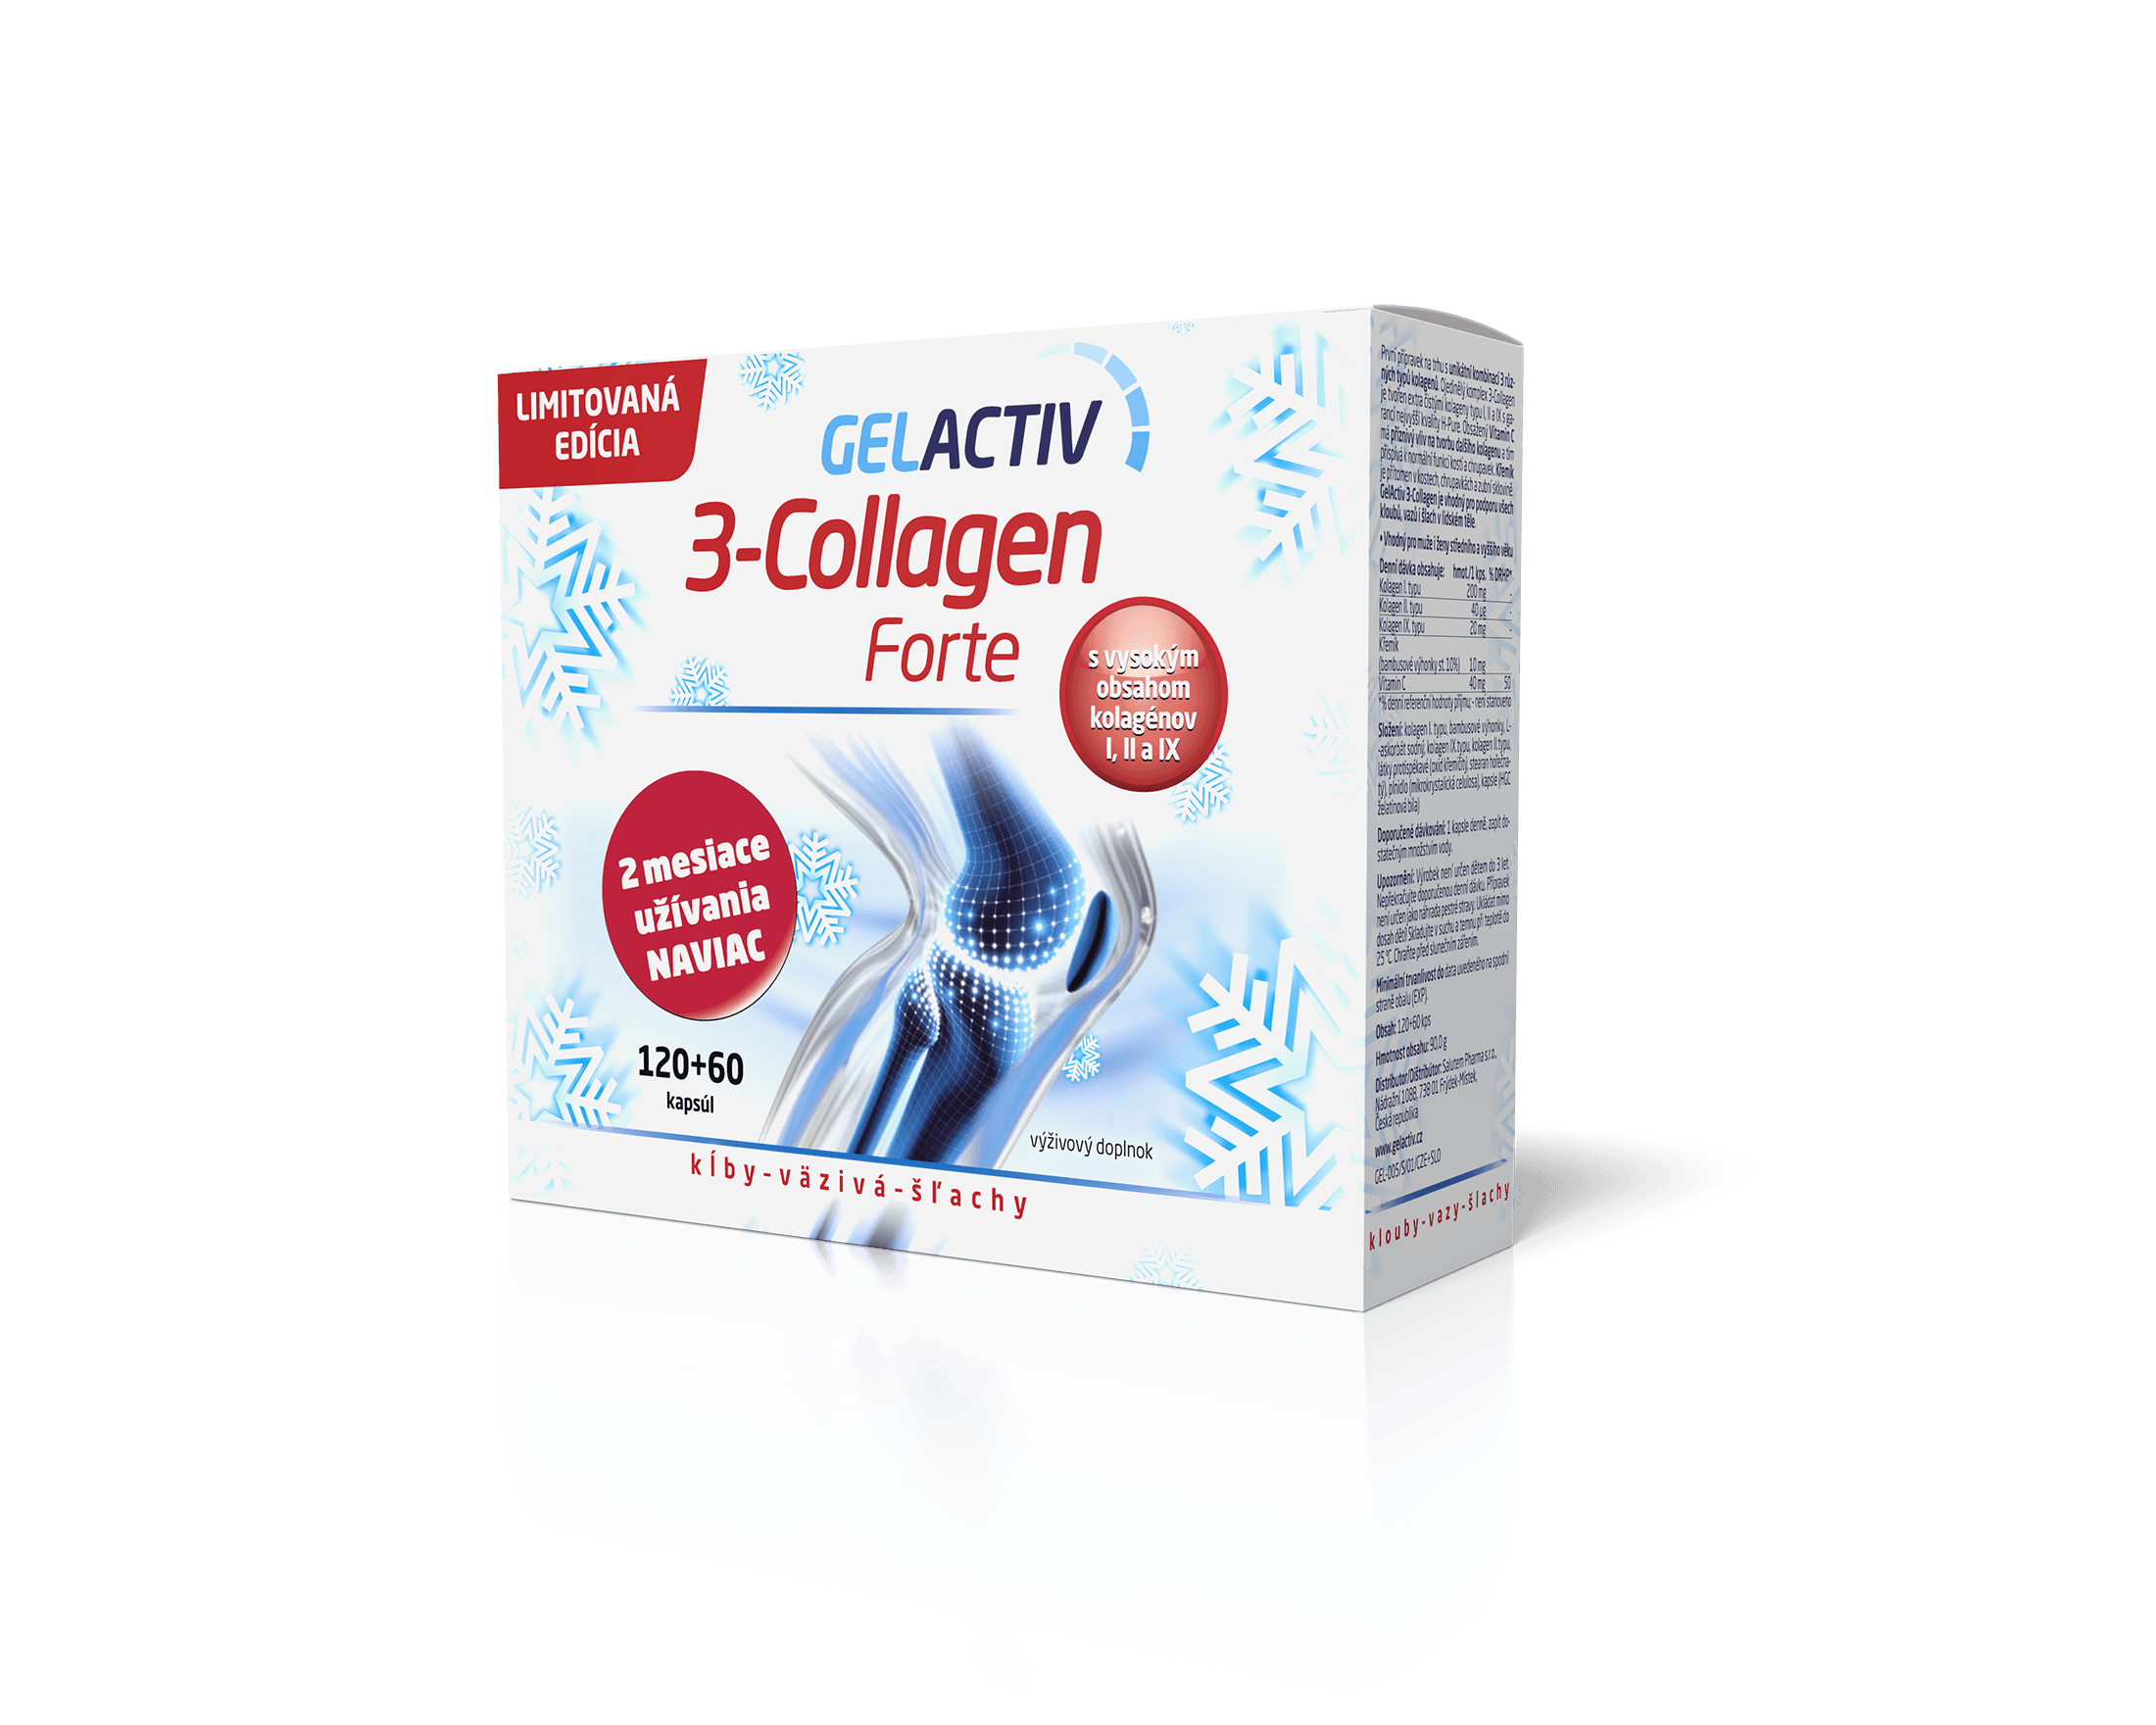 vizu vanoce Gelactiv 3-Collagen forte 120+60 SLO P2 WEB30 GelActiv 3-Collagen Forte 120+60 cps. zadarmo